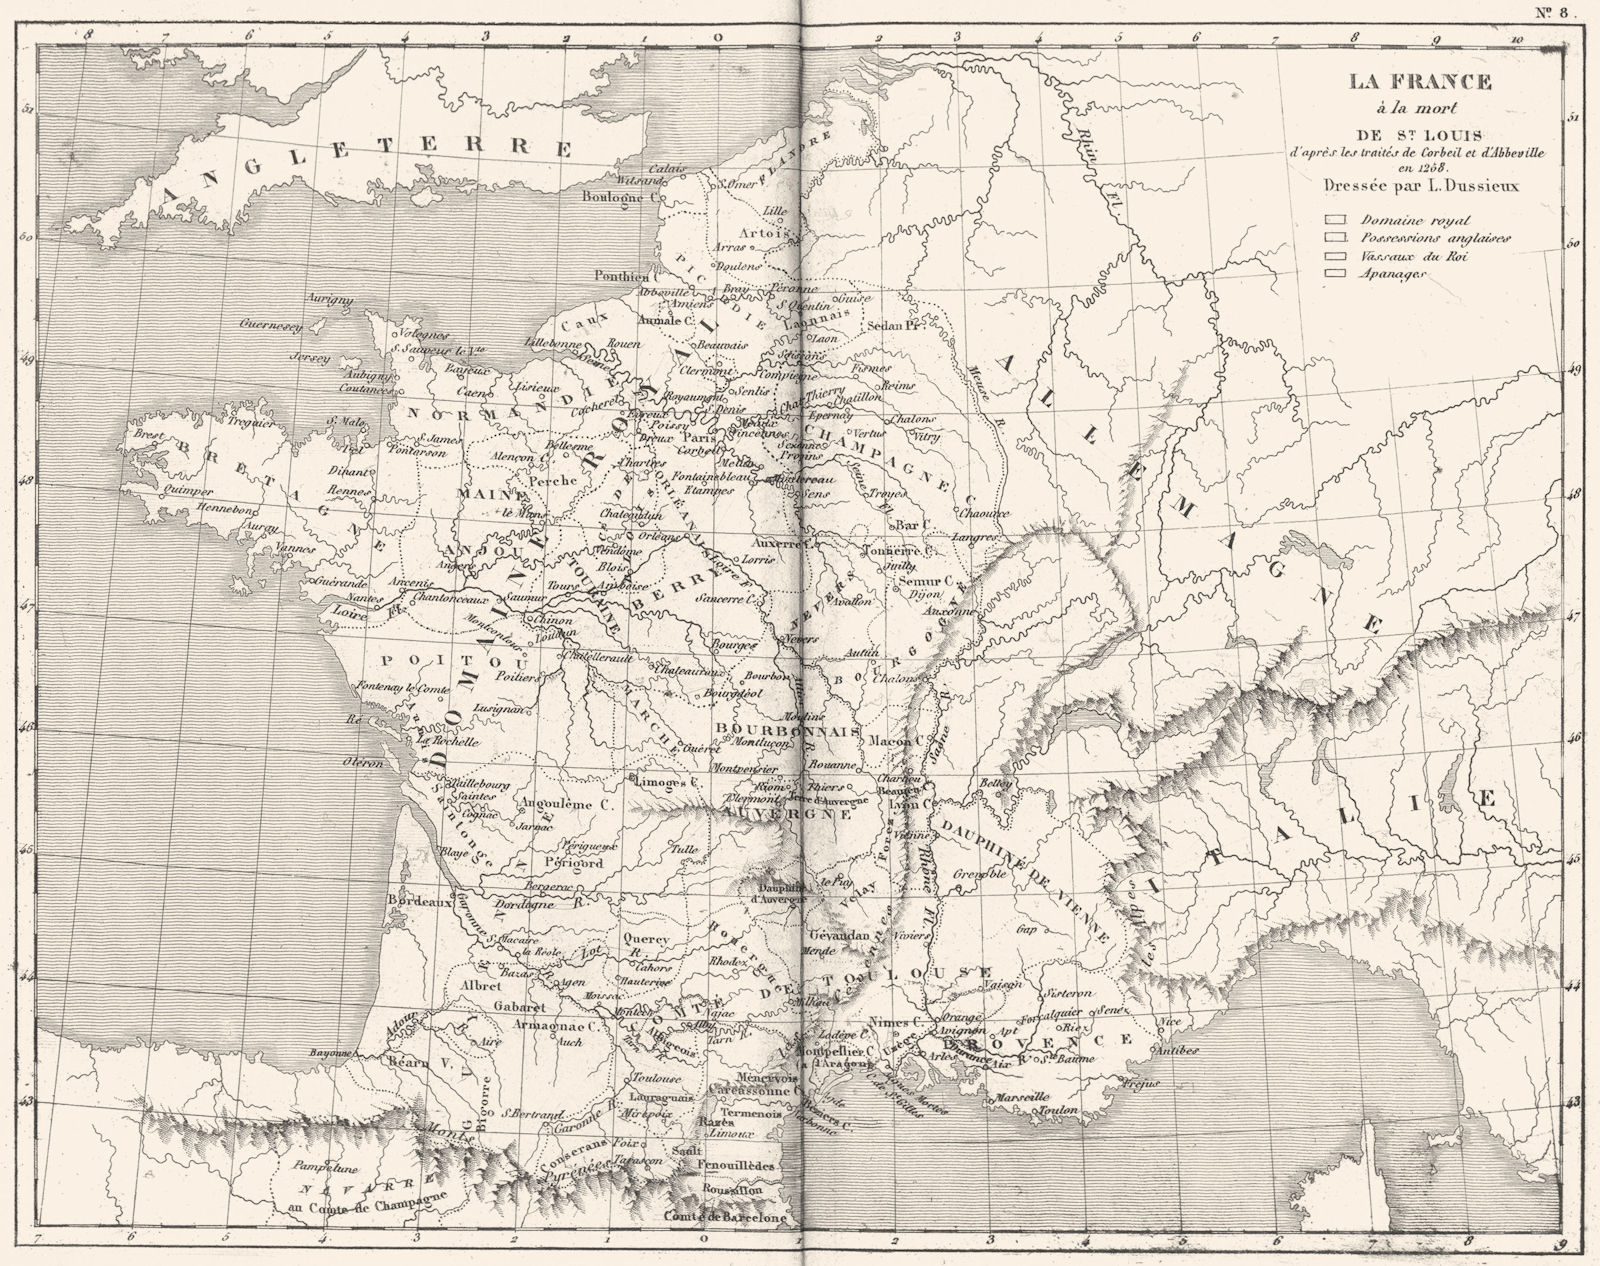 FRANCE. La France a la Mort de St Louis 1879 old antique map plan chart